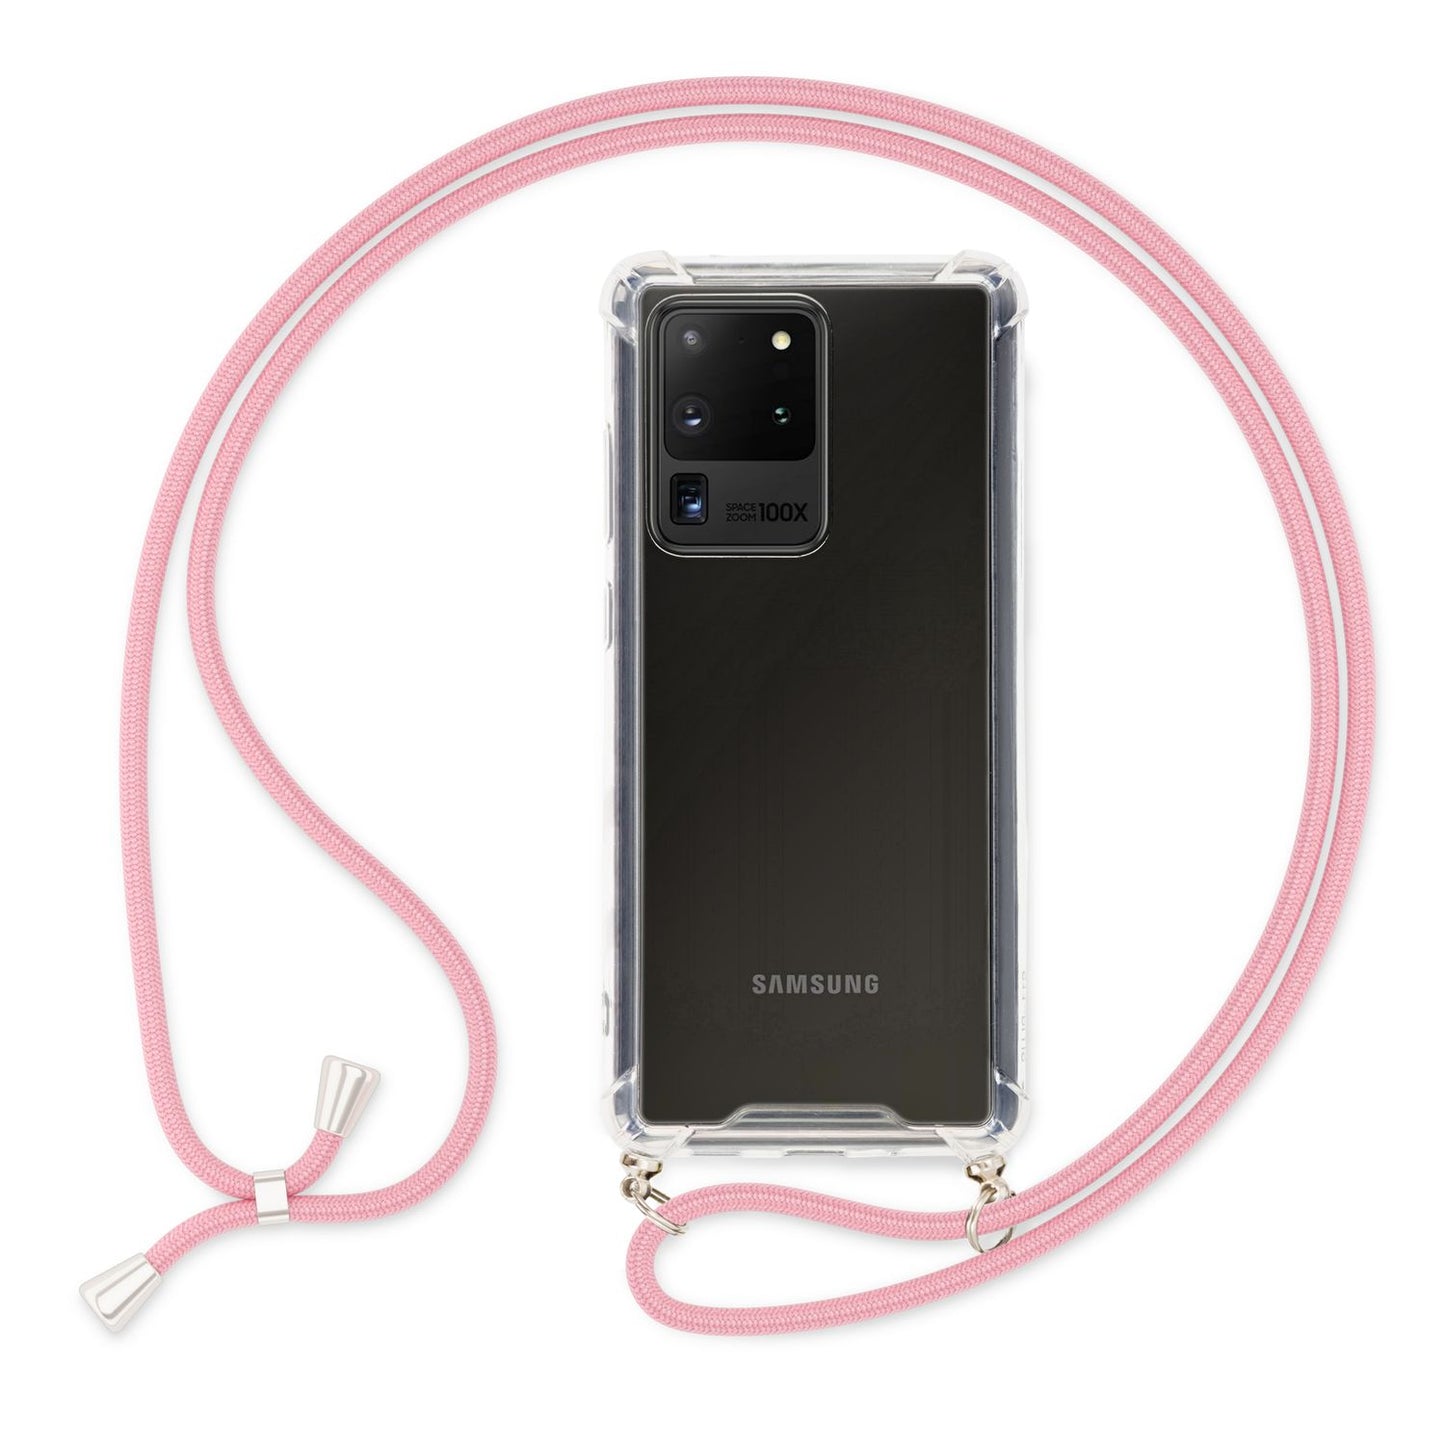 NALIA Handy Hülle mit Kette für Samsung Galaxy S20 Ultra, Soft Kordel Cover Etui